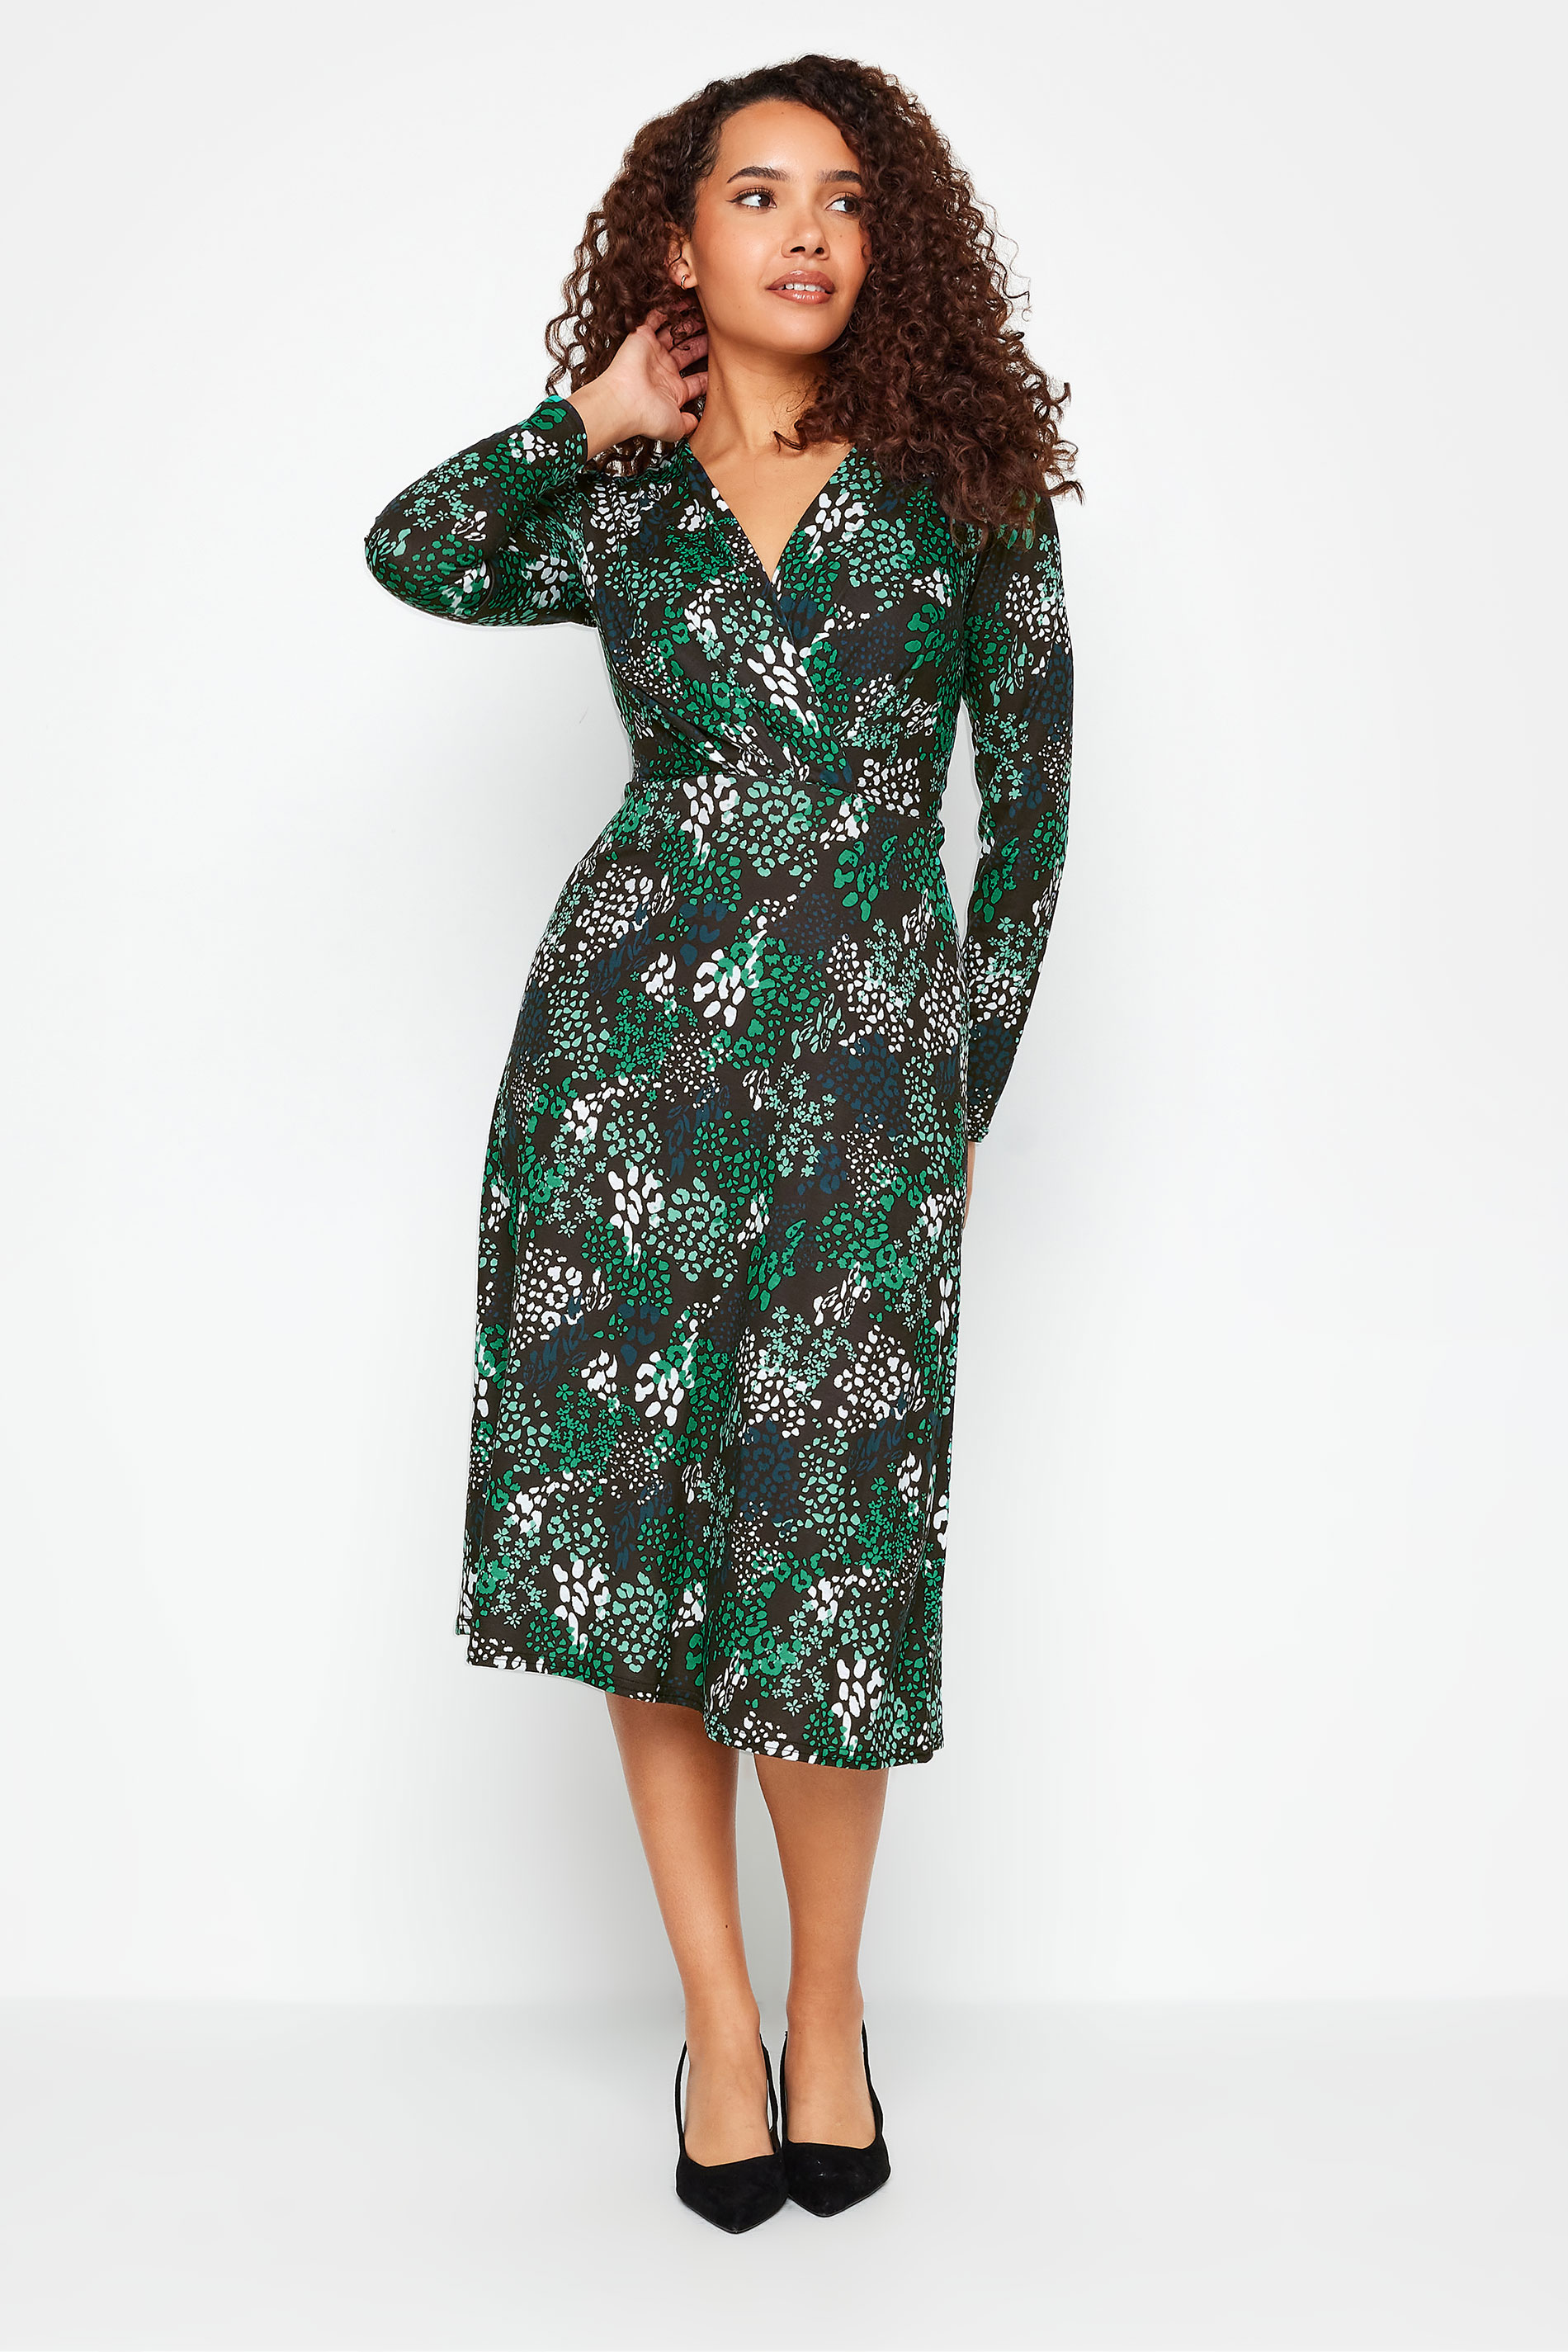 M&Co Black & Green Animal Print Wrap Dress | M&Co 2